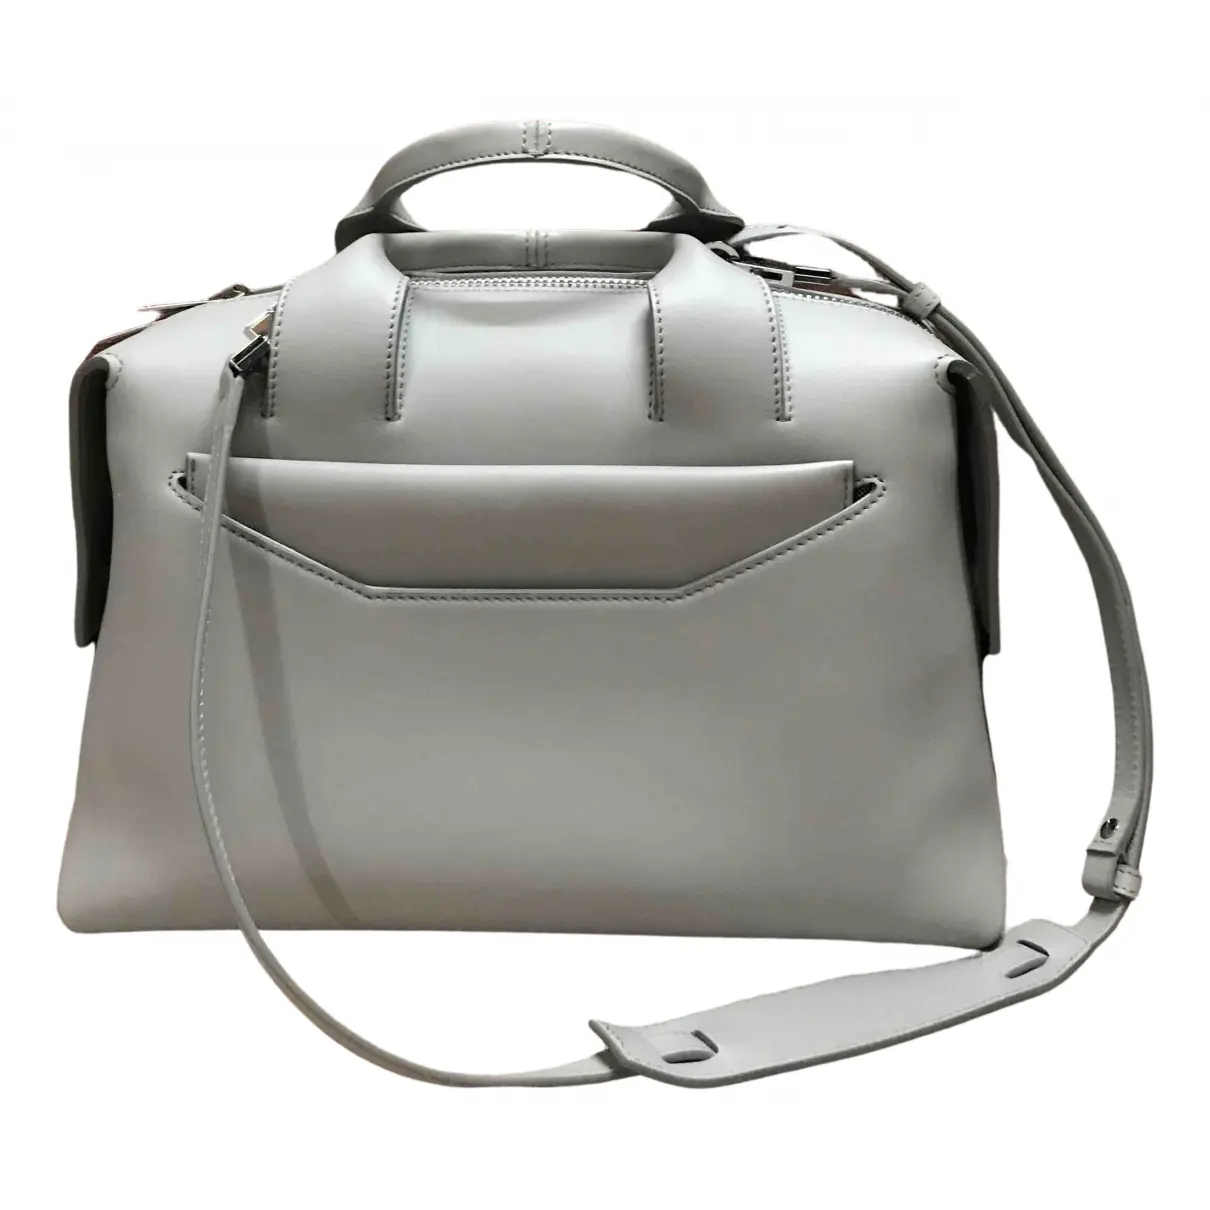 Leather handbag Alexander Wang